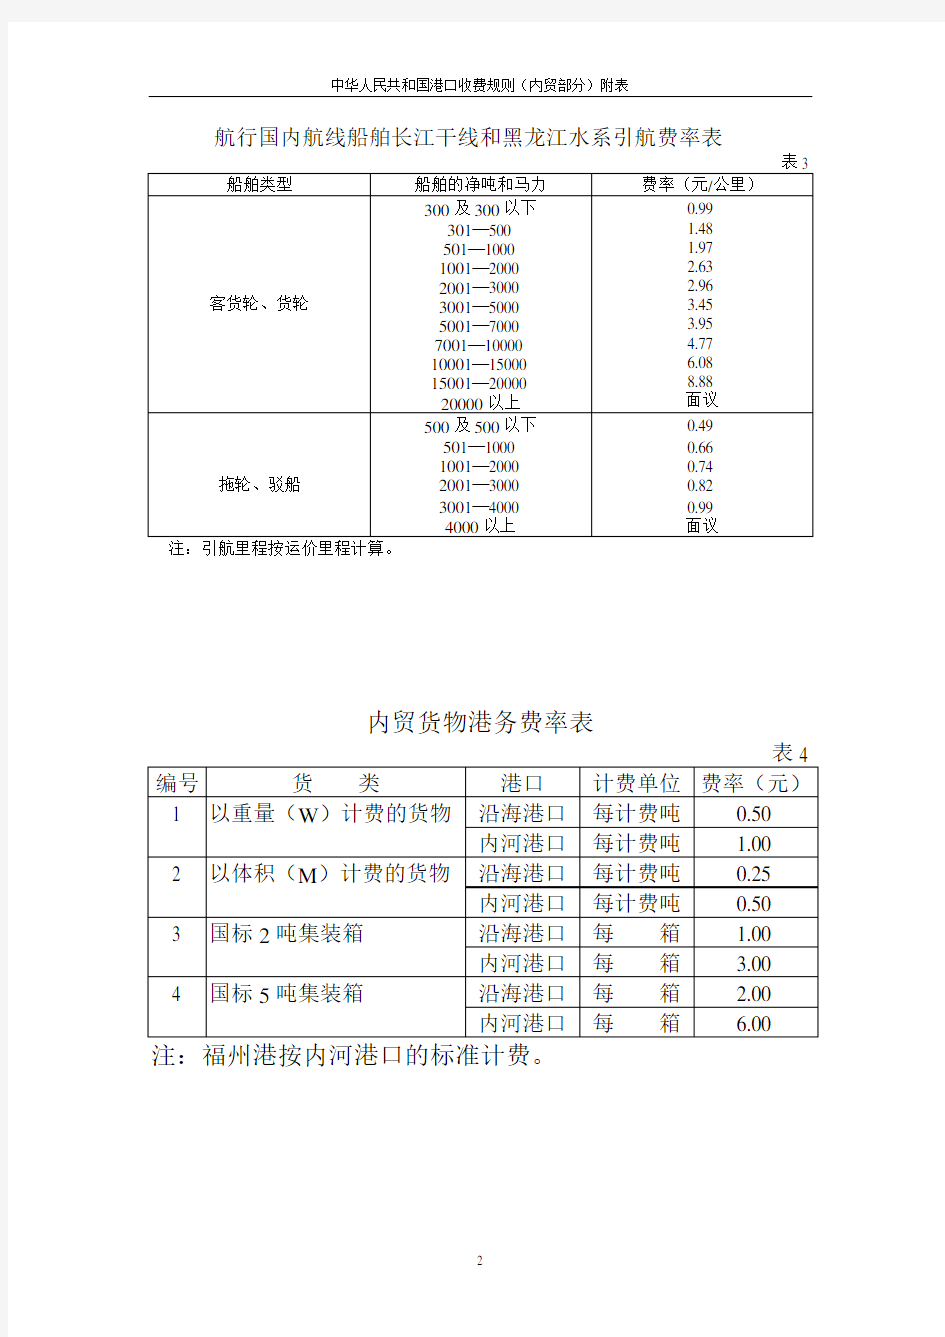 中华人民共和国港口收费规则内贸部分附表